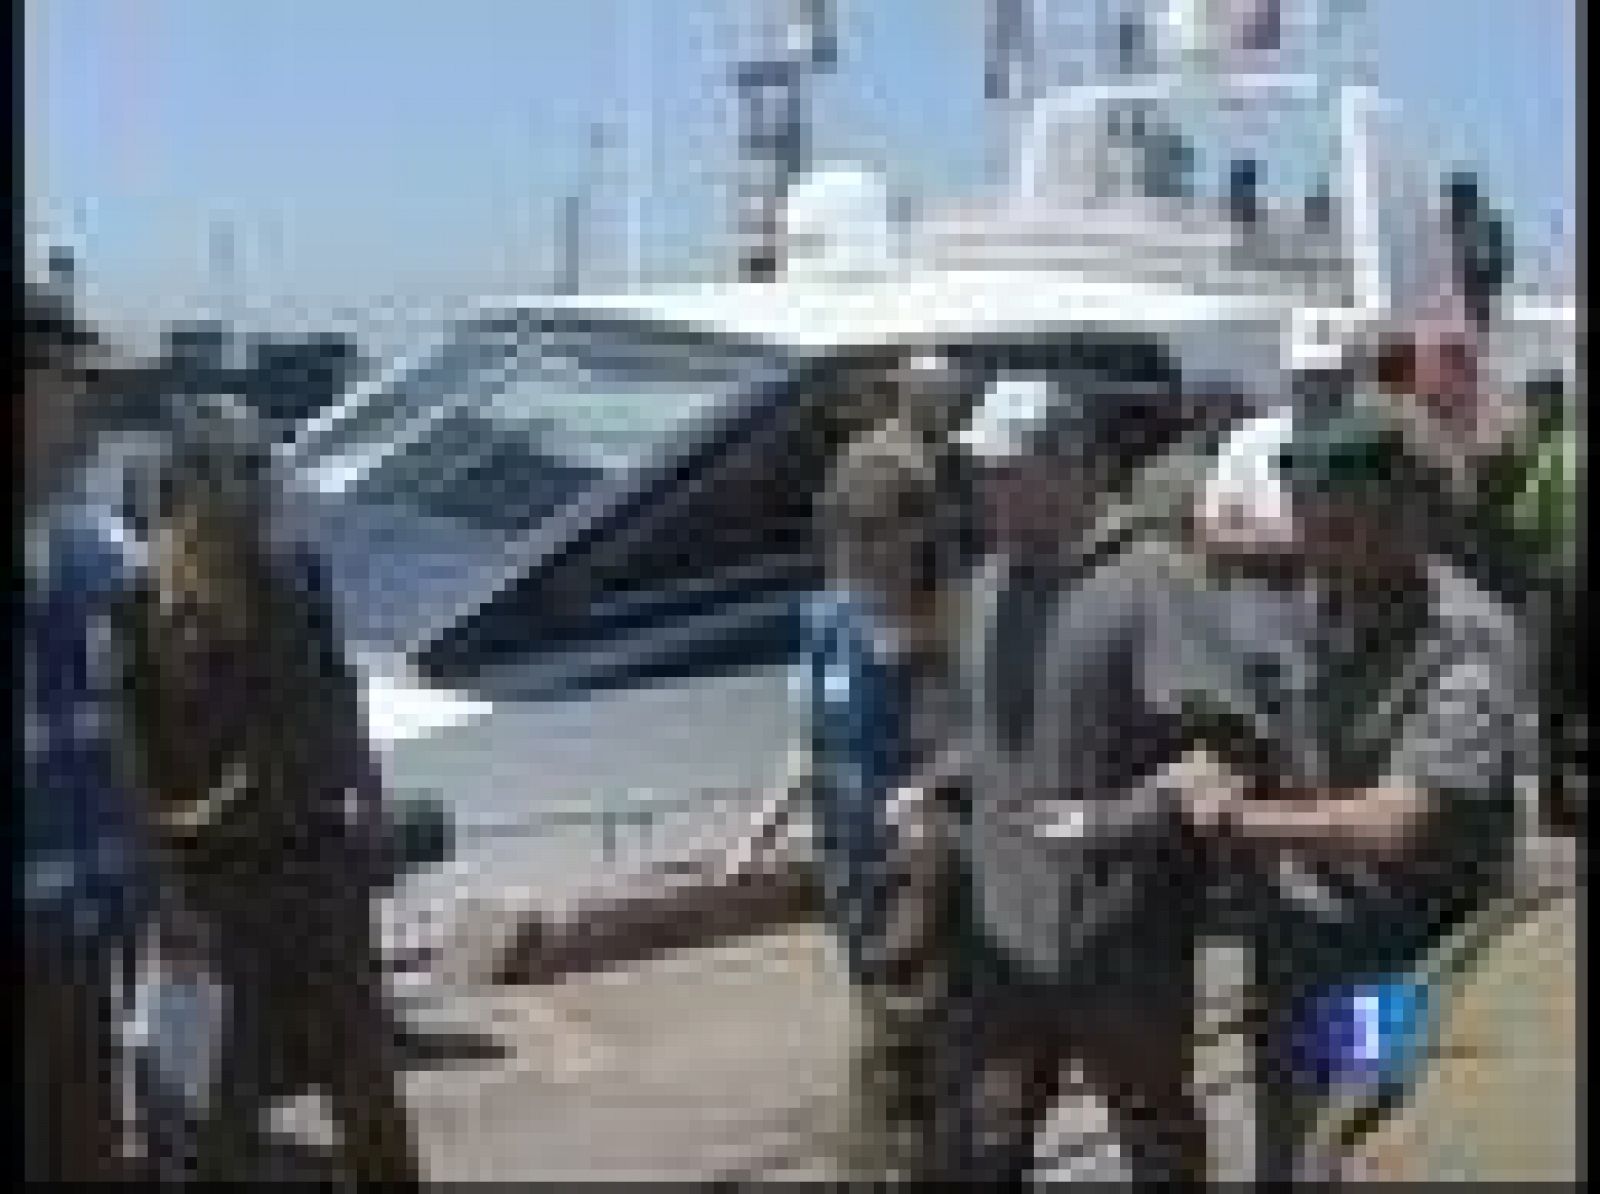 Hay mucha confusión todavía sobre lo que ocurrió, sobre el estado de los heridos y sus nacionalidades. Lo que sí se sabe es que hay un nuevo barco con ayuda humanitaria a punto de llegar.Israel ha obligado a desembarcar a muchos activistas.